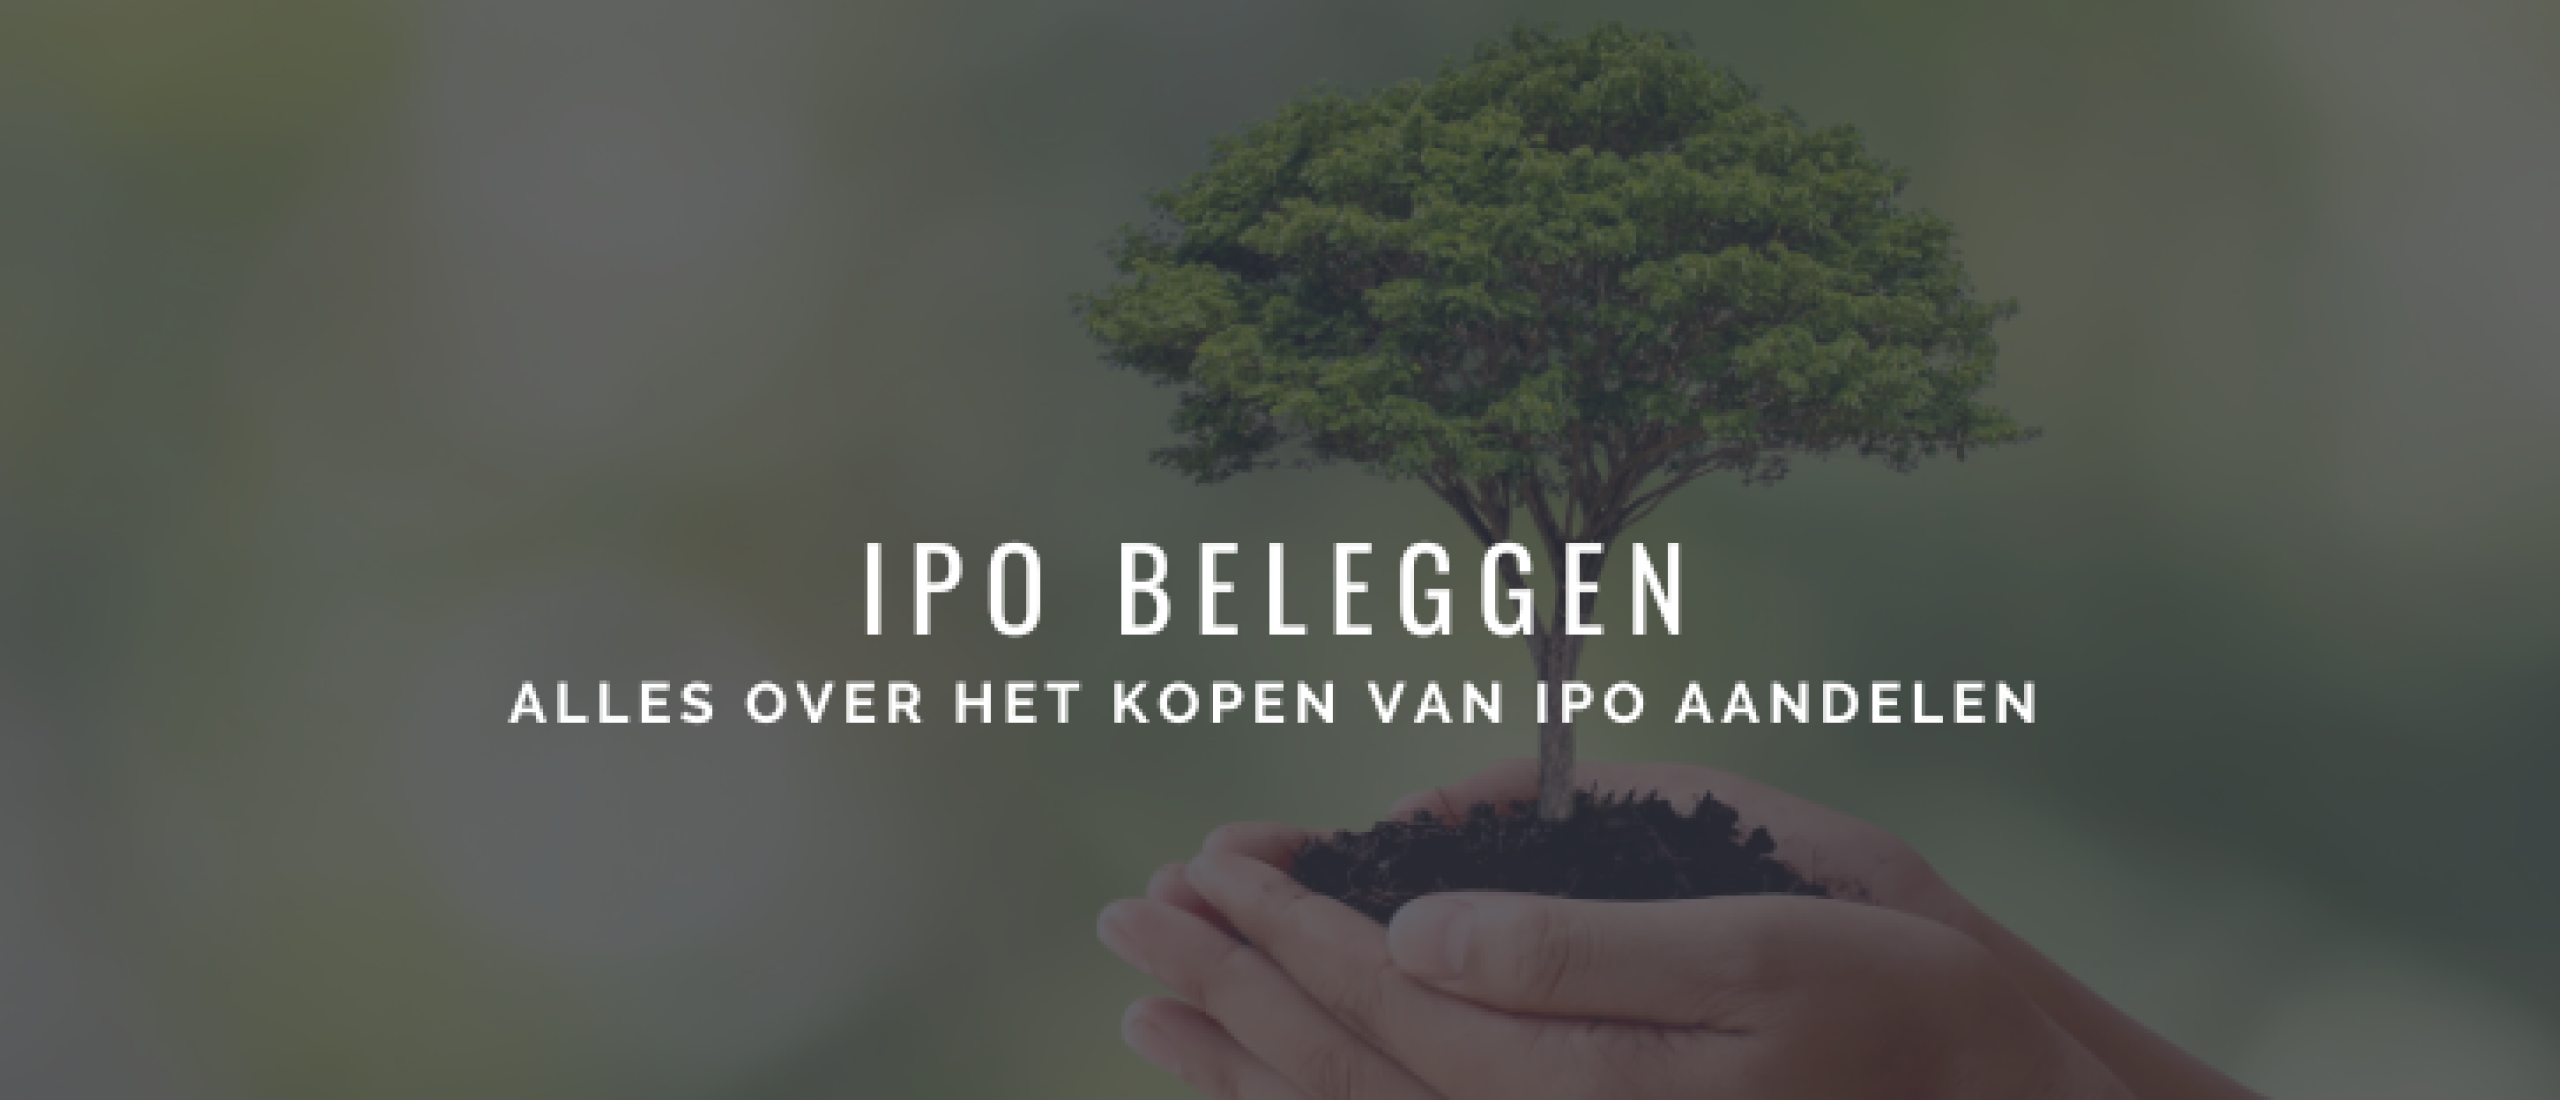 IPO Beleggen: Alles over IPO Aandelen Kopen | Happy Investors